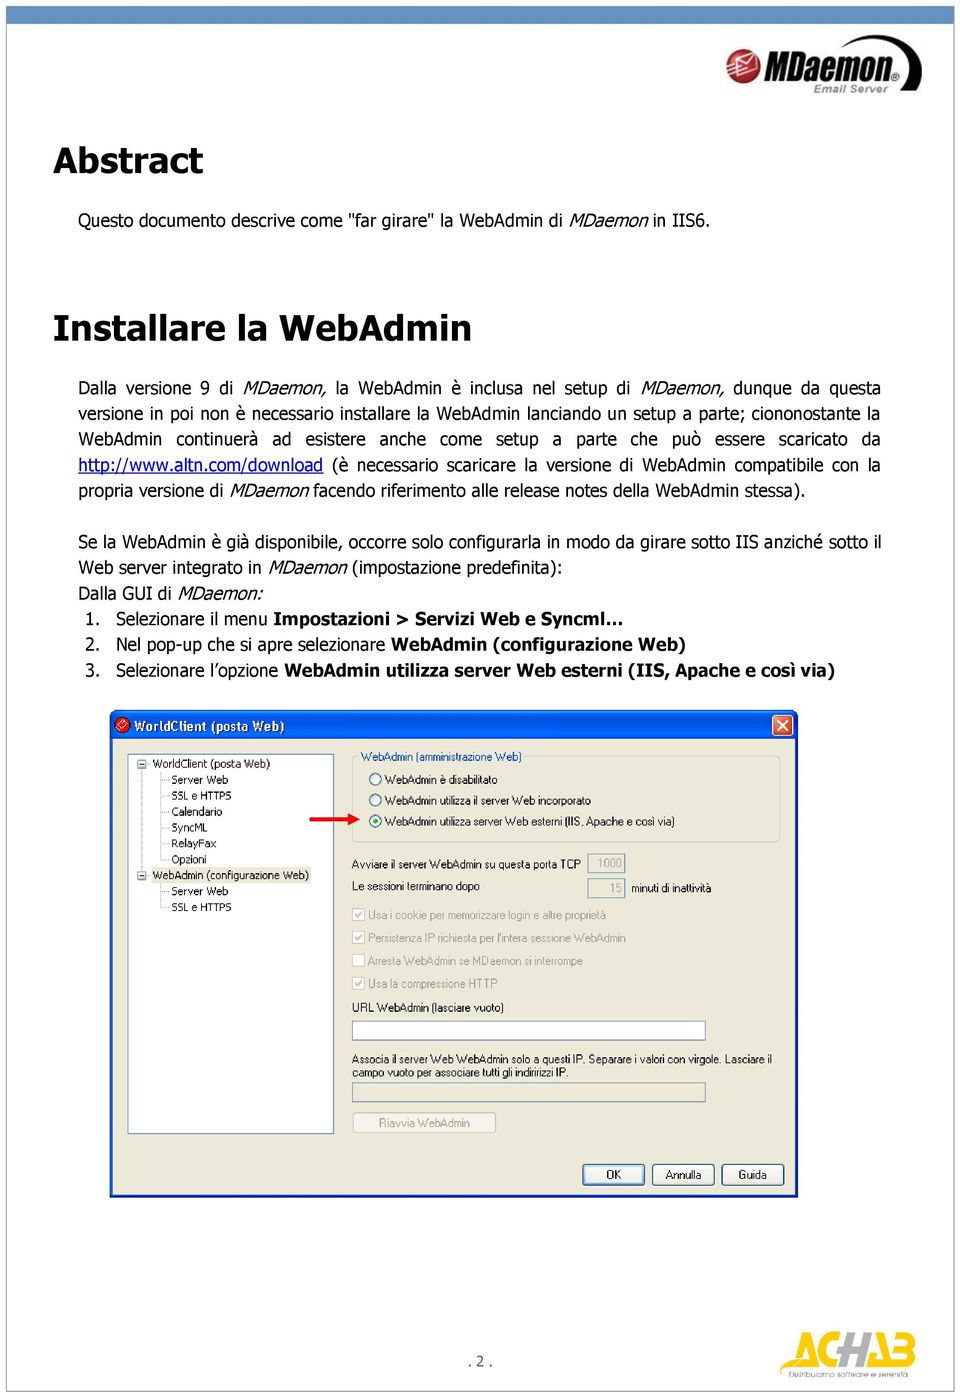 ciononostante la WebAdmin continuerà ad esistere anche come setup a parte che può essere scaricato da http://www.altn.